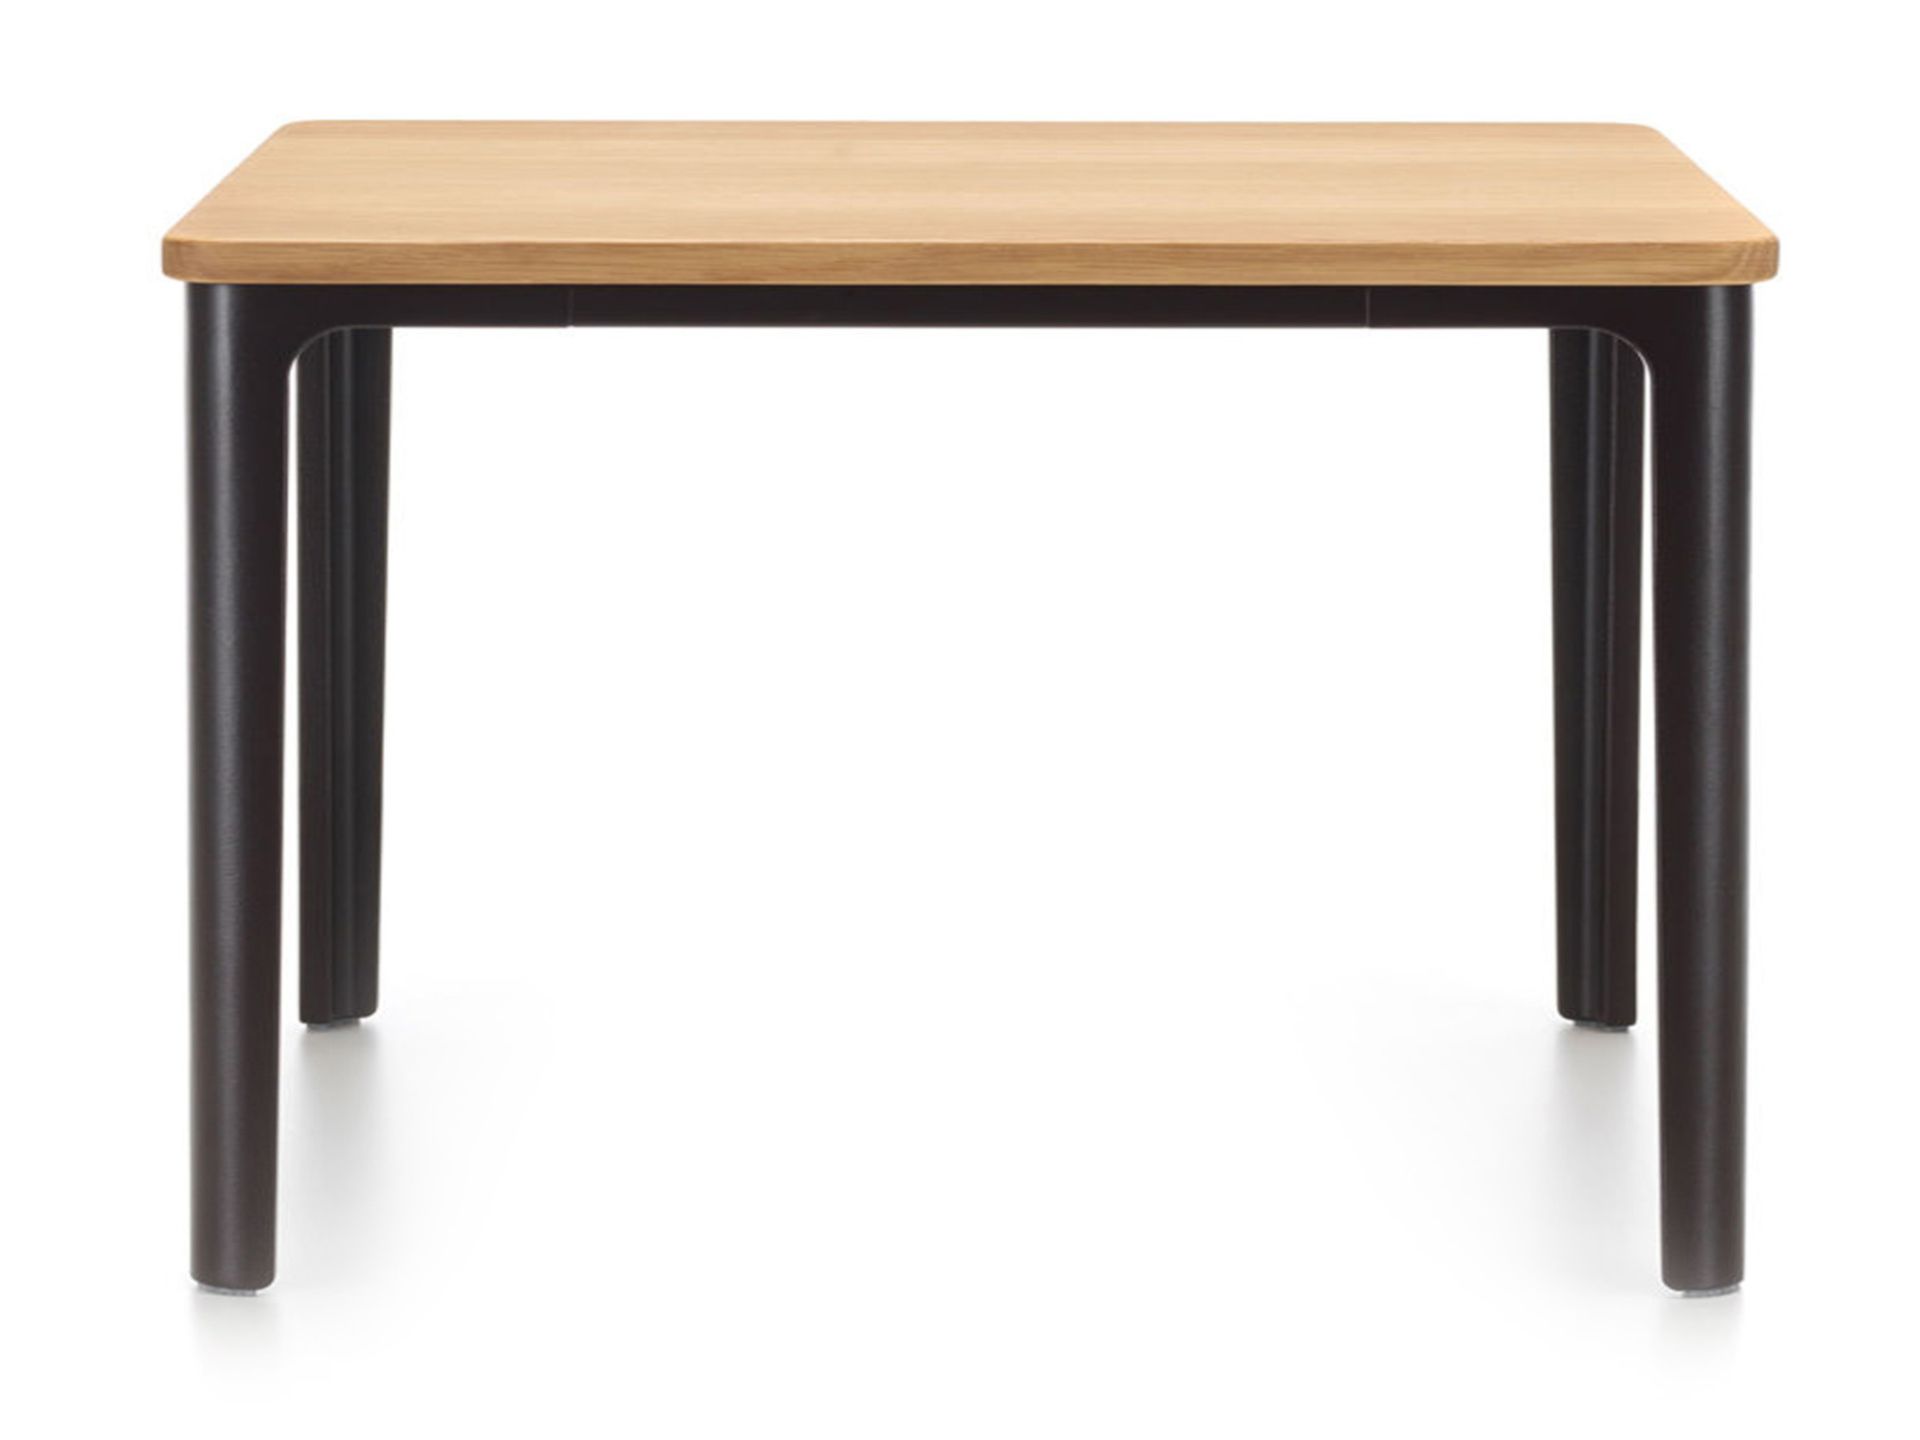 Vitra designové konferenční stoly Plate Table Square (41 x 41 cm) - DESIGNPROPAGANDA